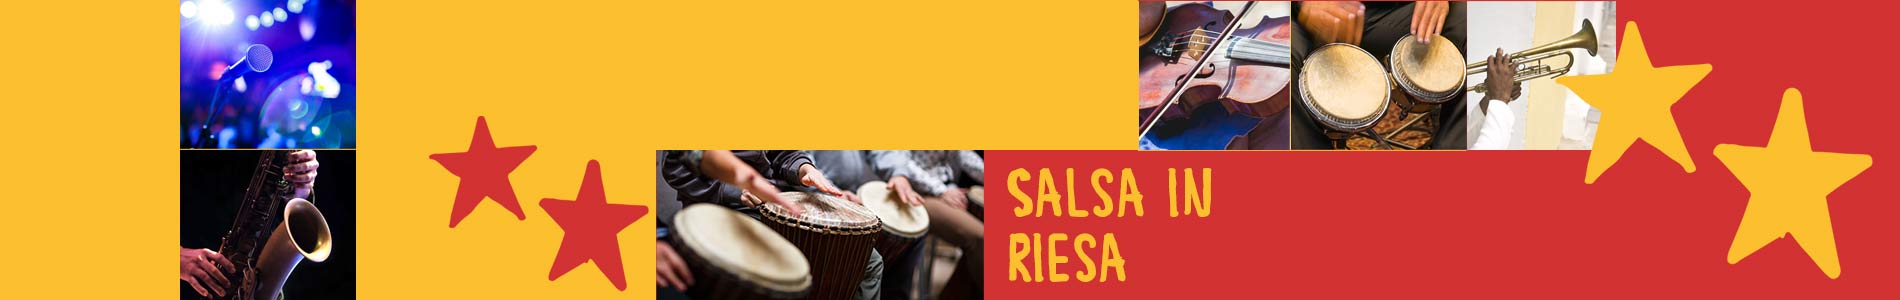 Salsa in Riesa – Salsa lernen und tanzen, Tanzkurse, Partys, Veranstaltungen